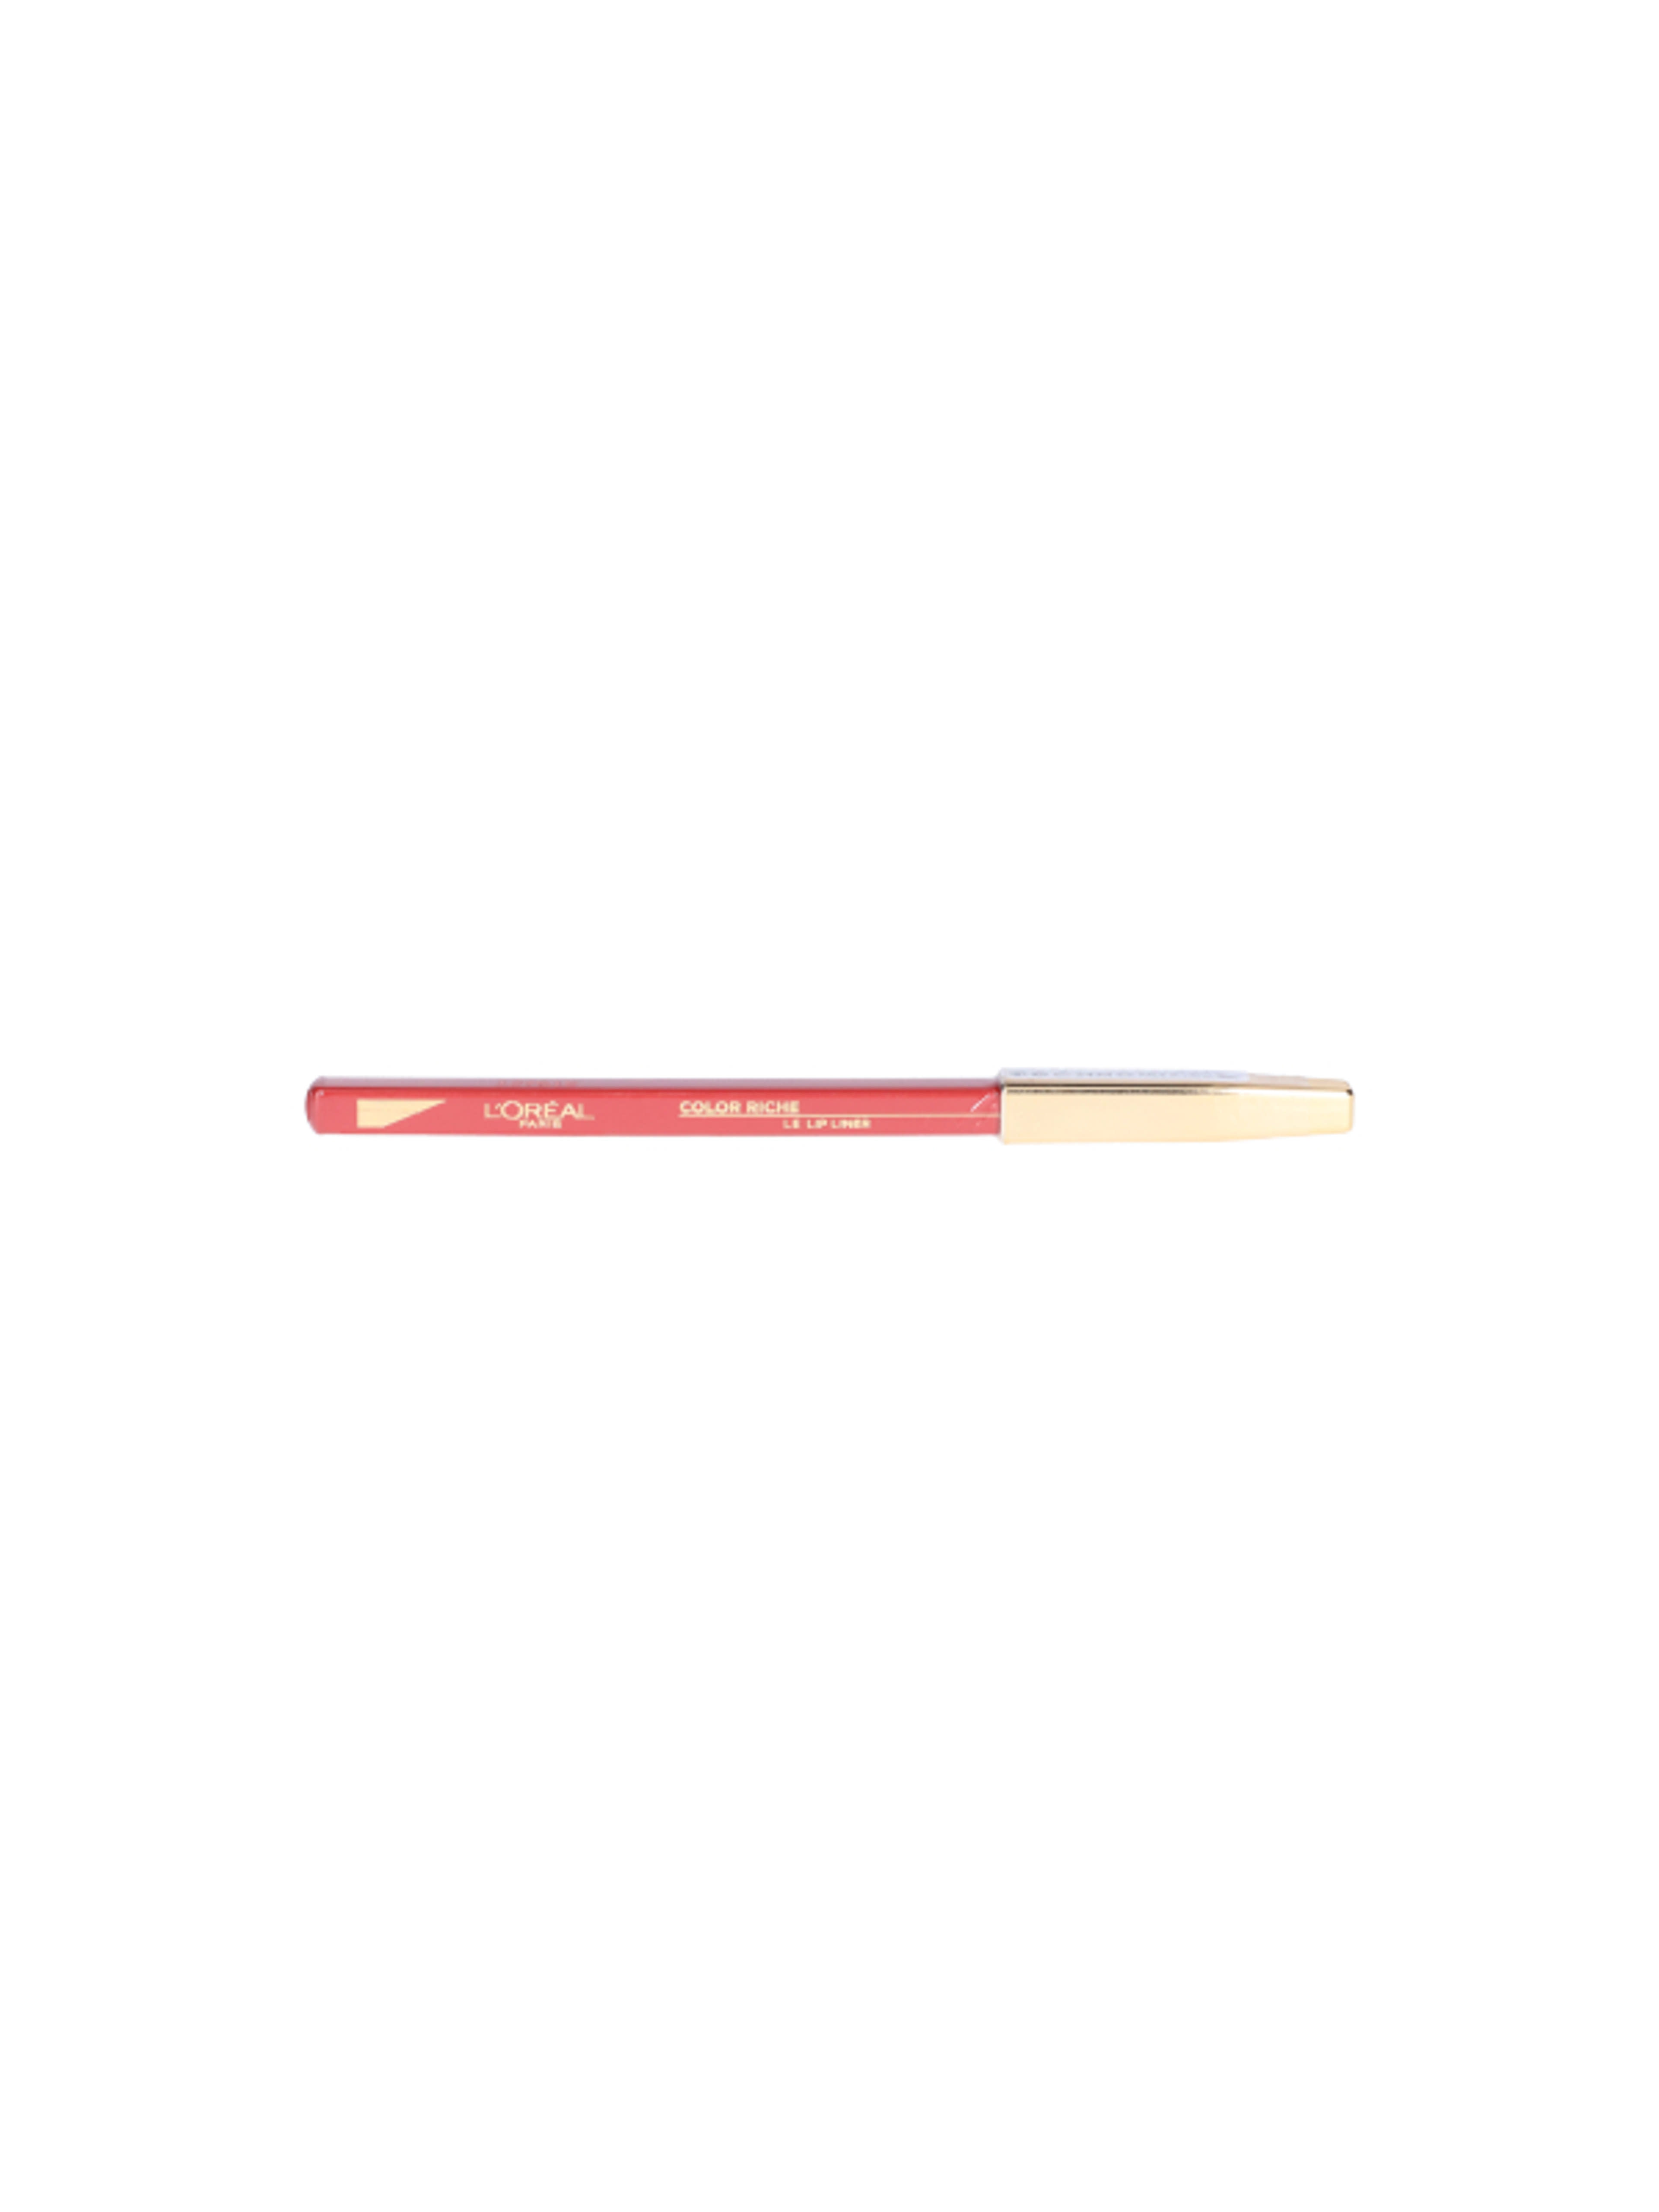 L'Oréal Paris Color Riche ajakkontúr ceruza 125 - 1 db-1